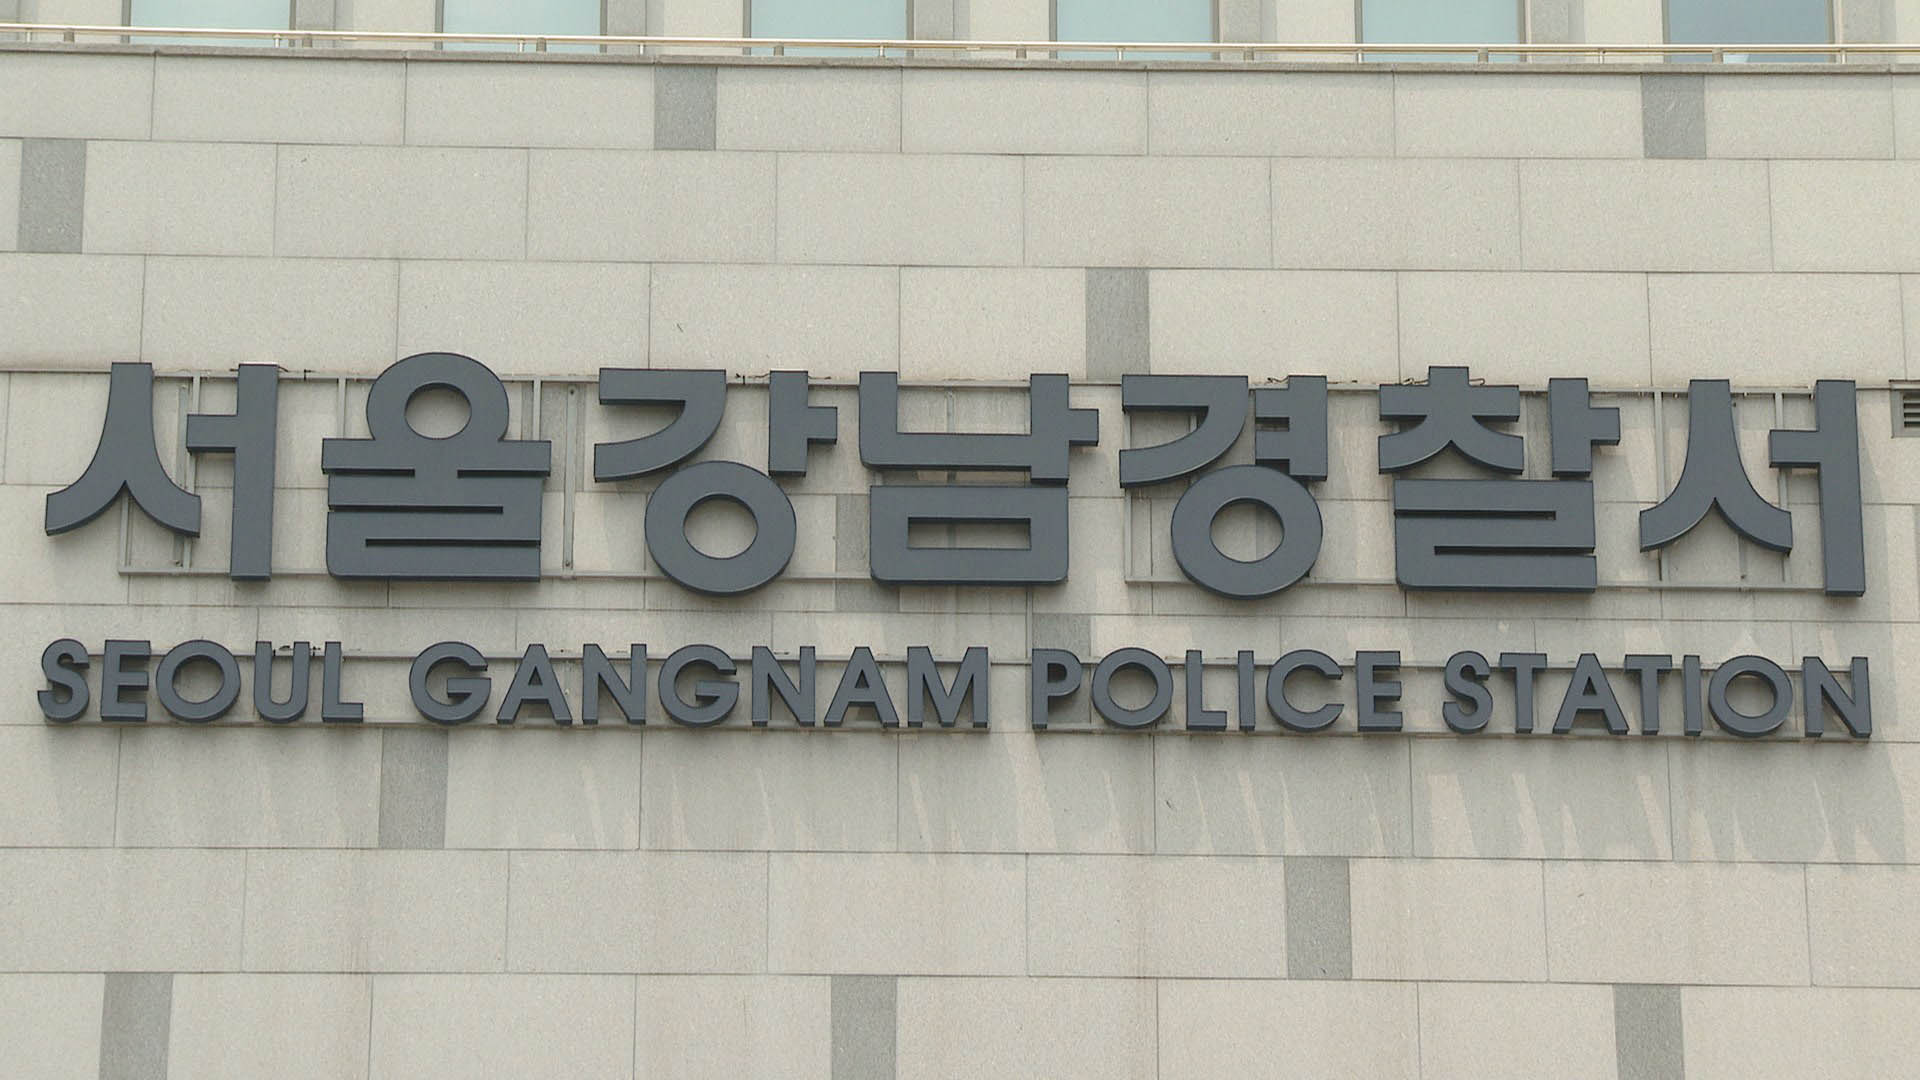 강남 10대 투신' 모의 남성 입건…자살방조 혐의 | 연합뉴스